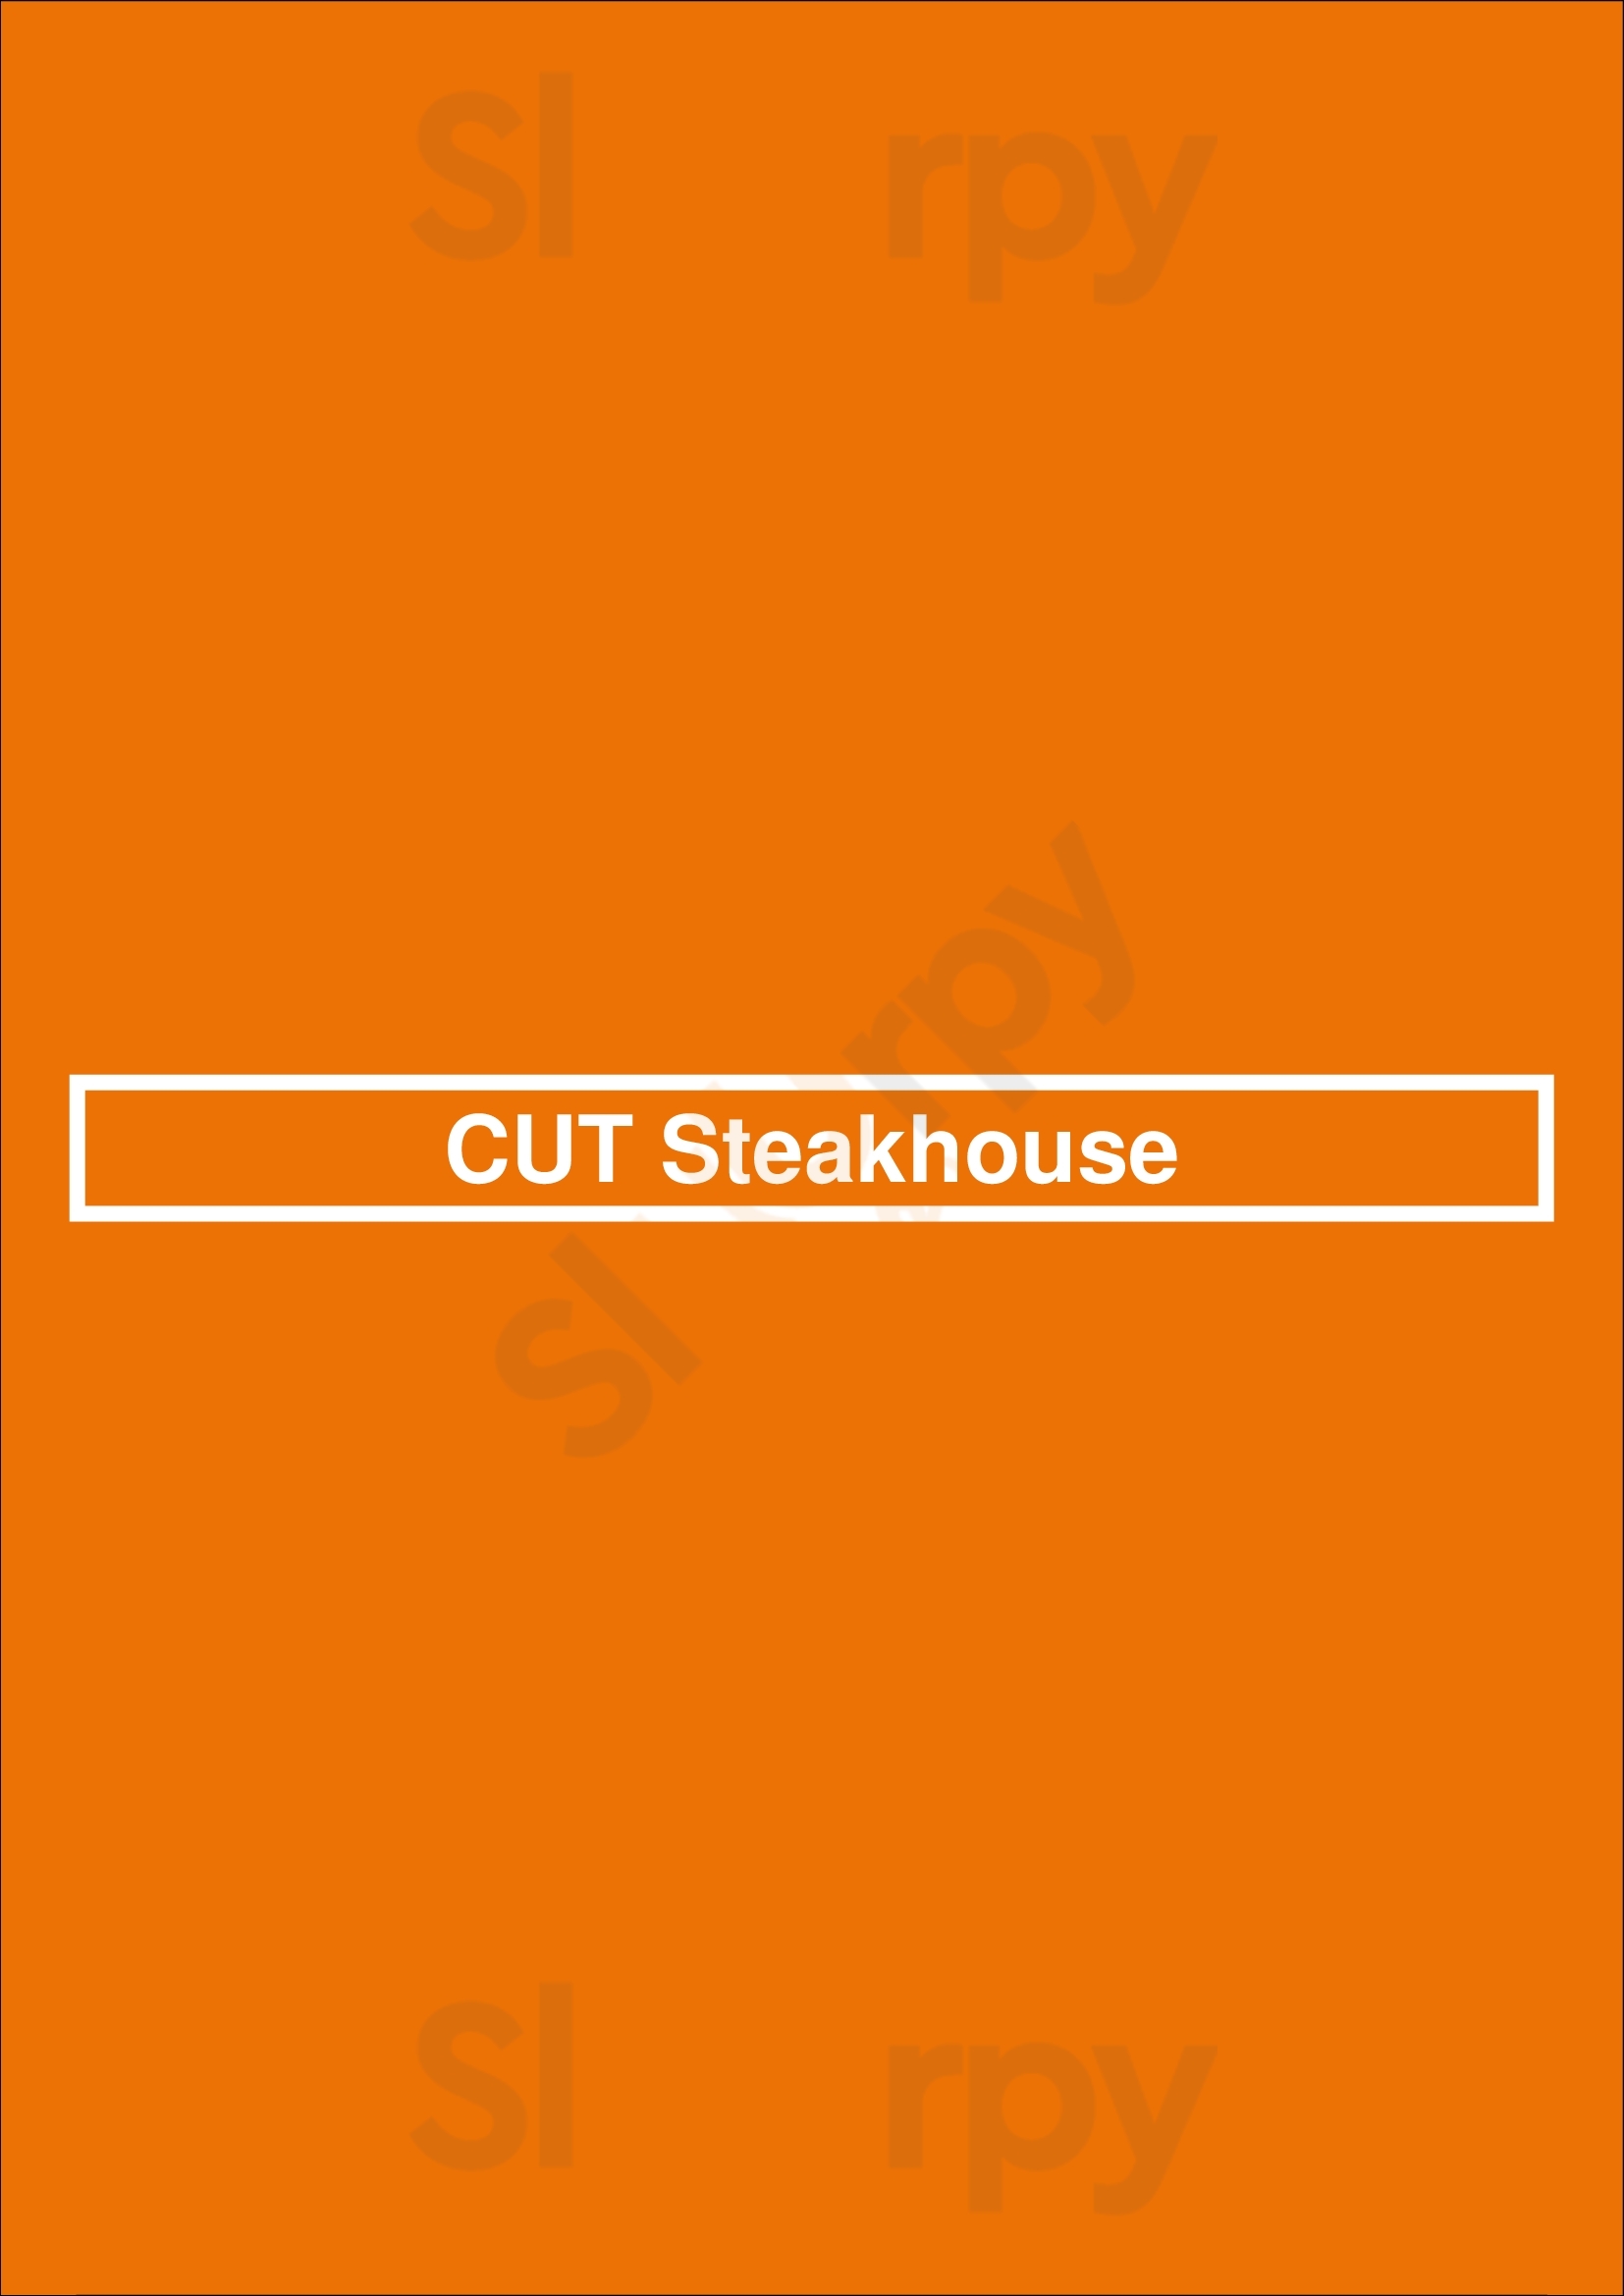 Cut Steakhouse Halifax Menu - 1